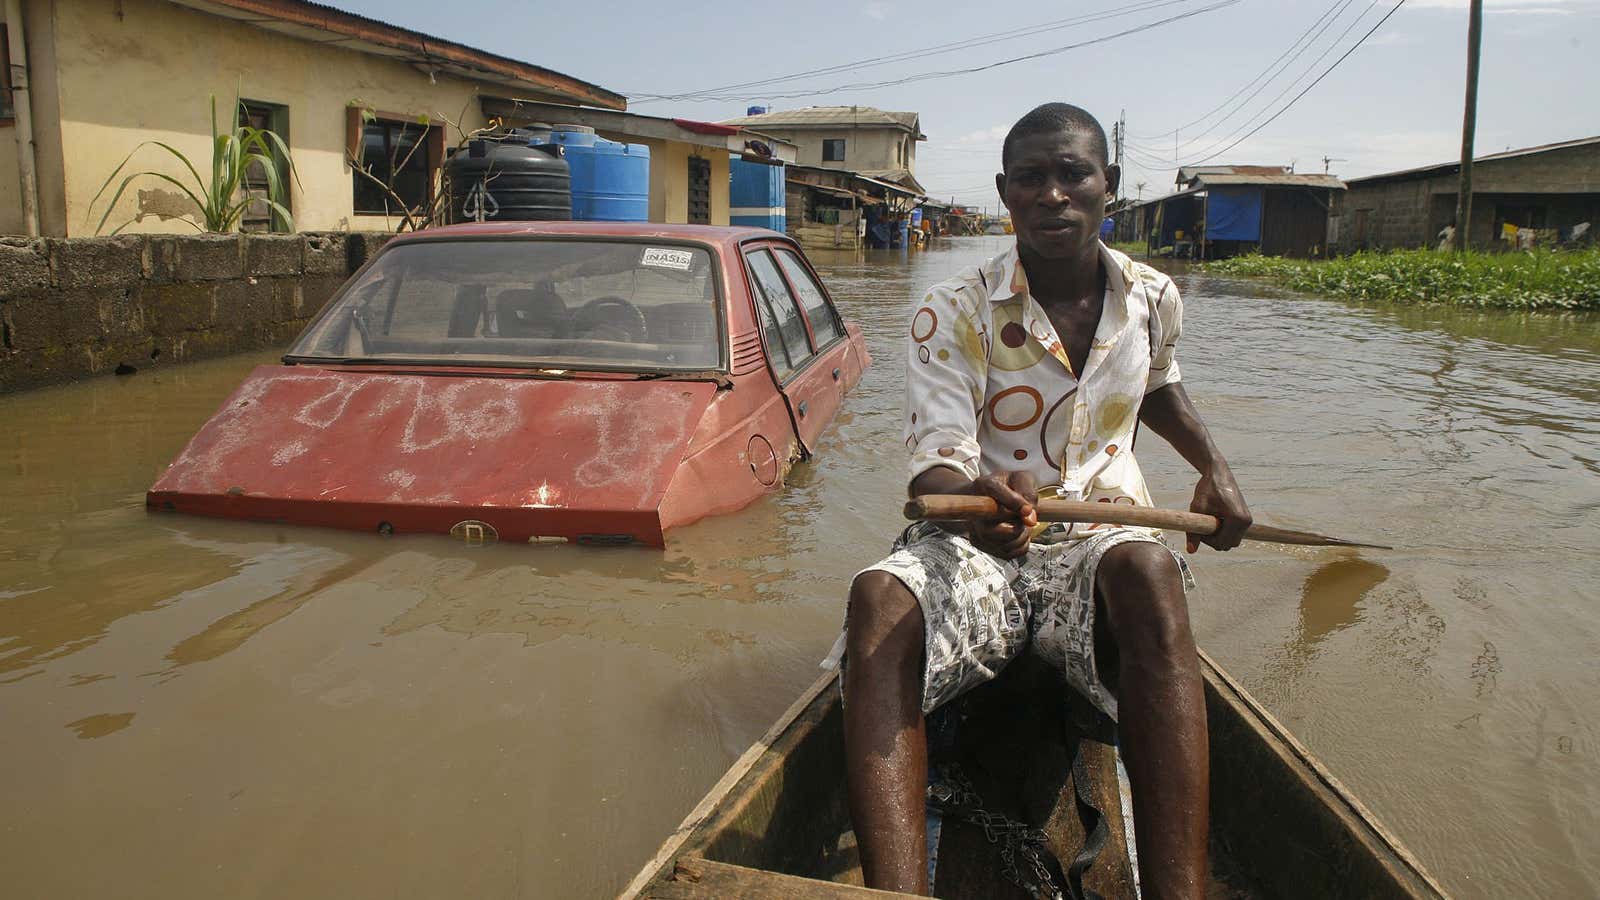 Lagos life: “Après nous, le déluge”